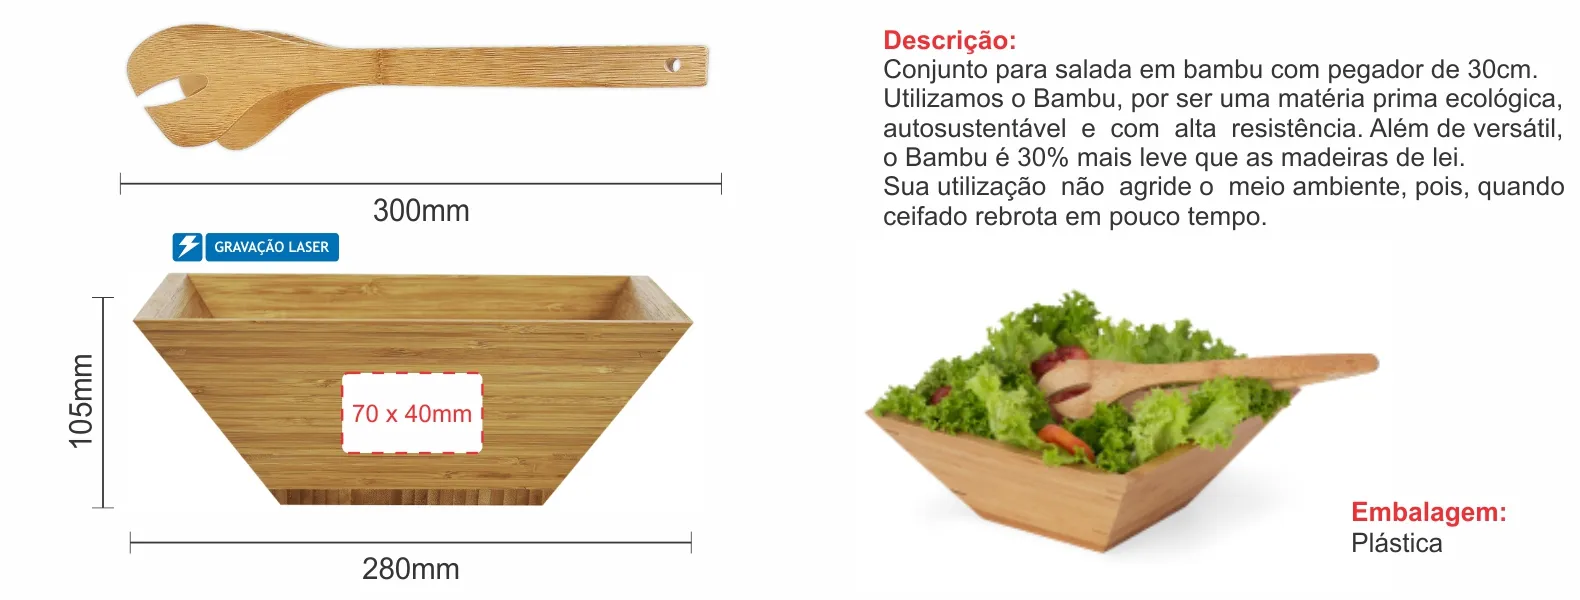 Conjunto para salada em bambu com pegador de 30cm.